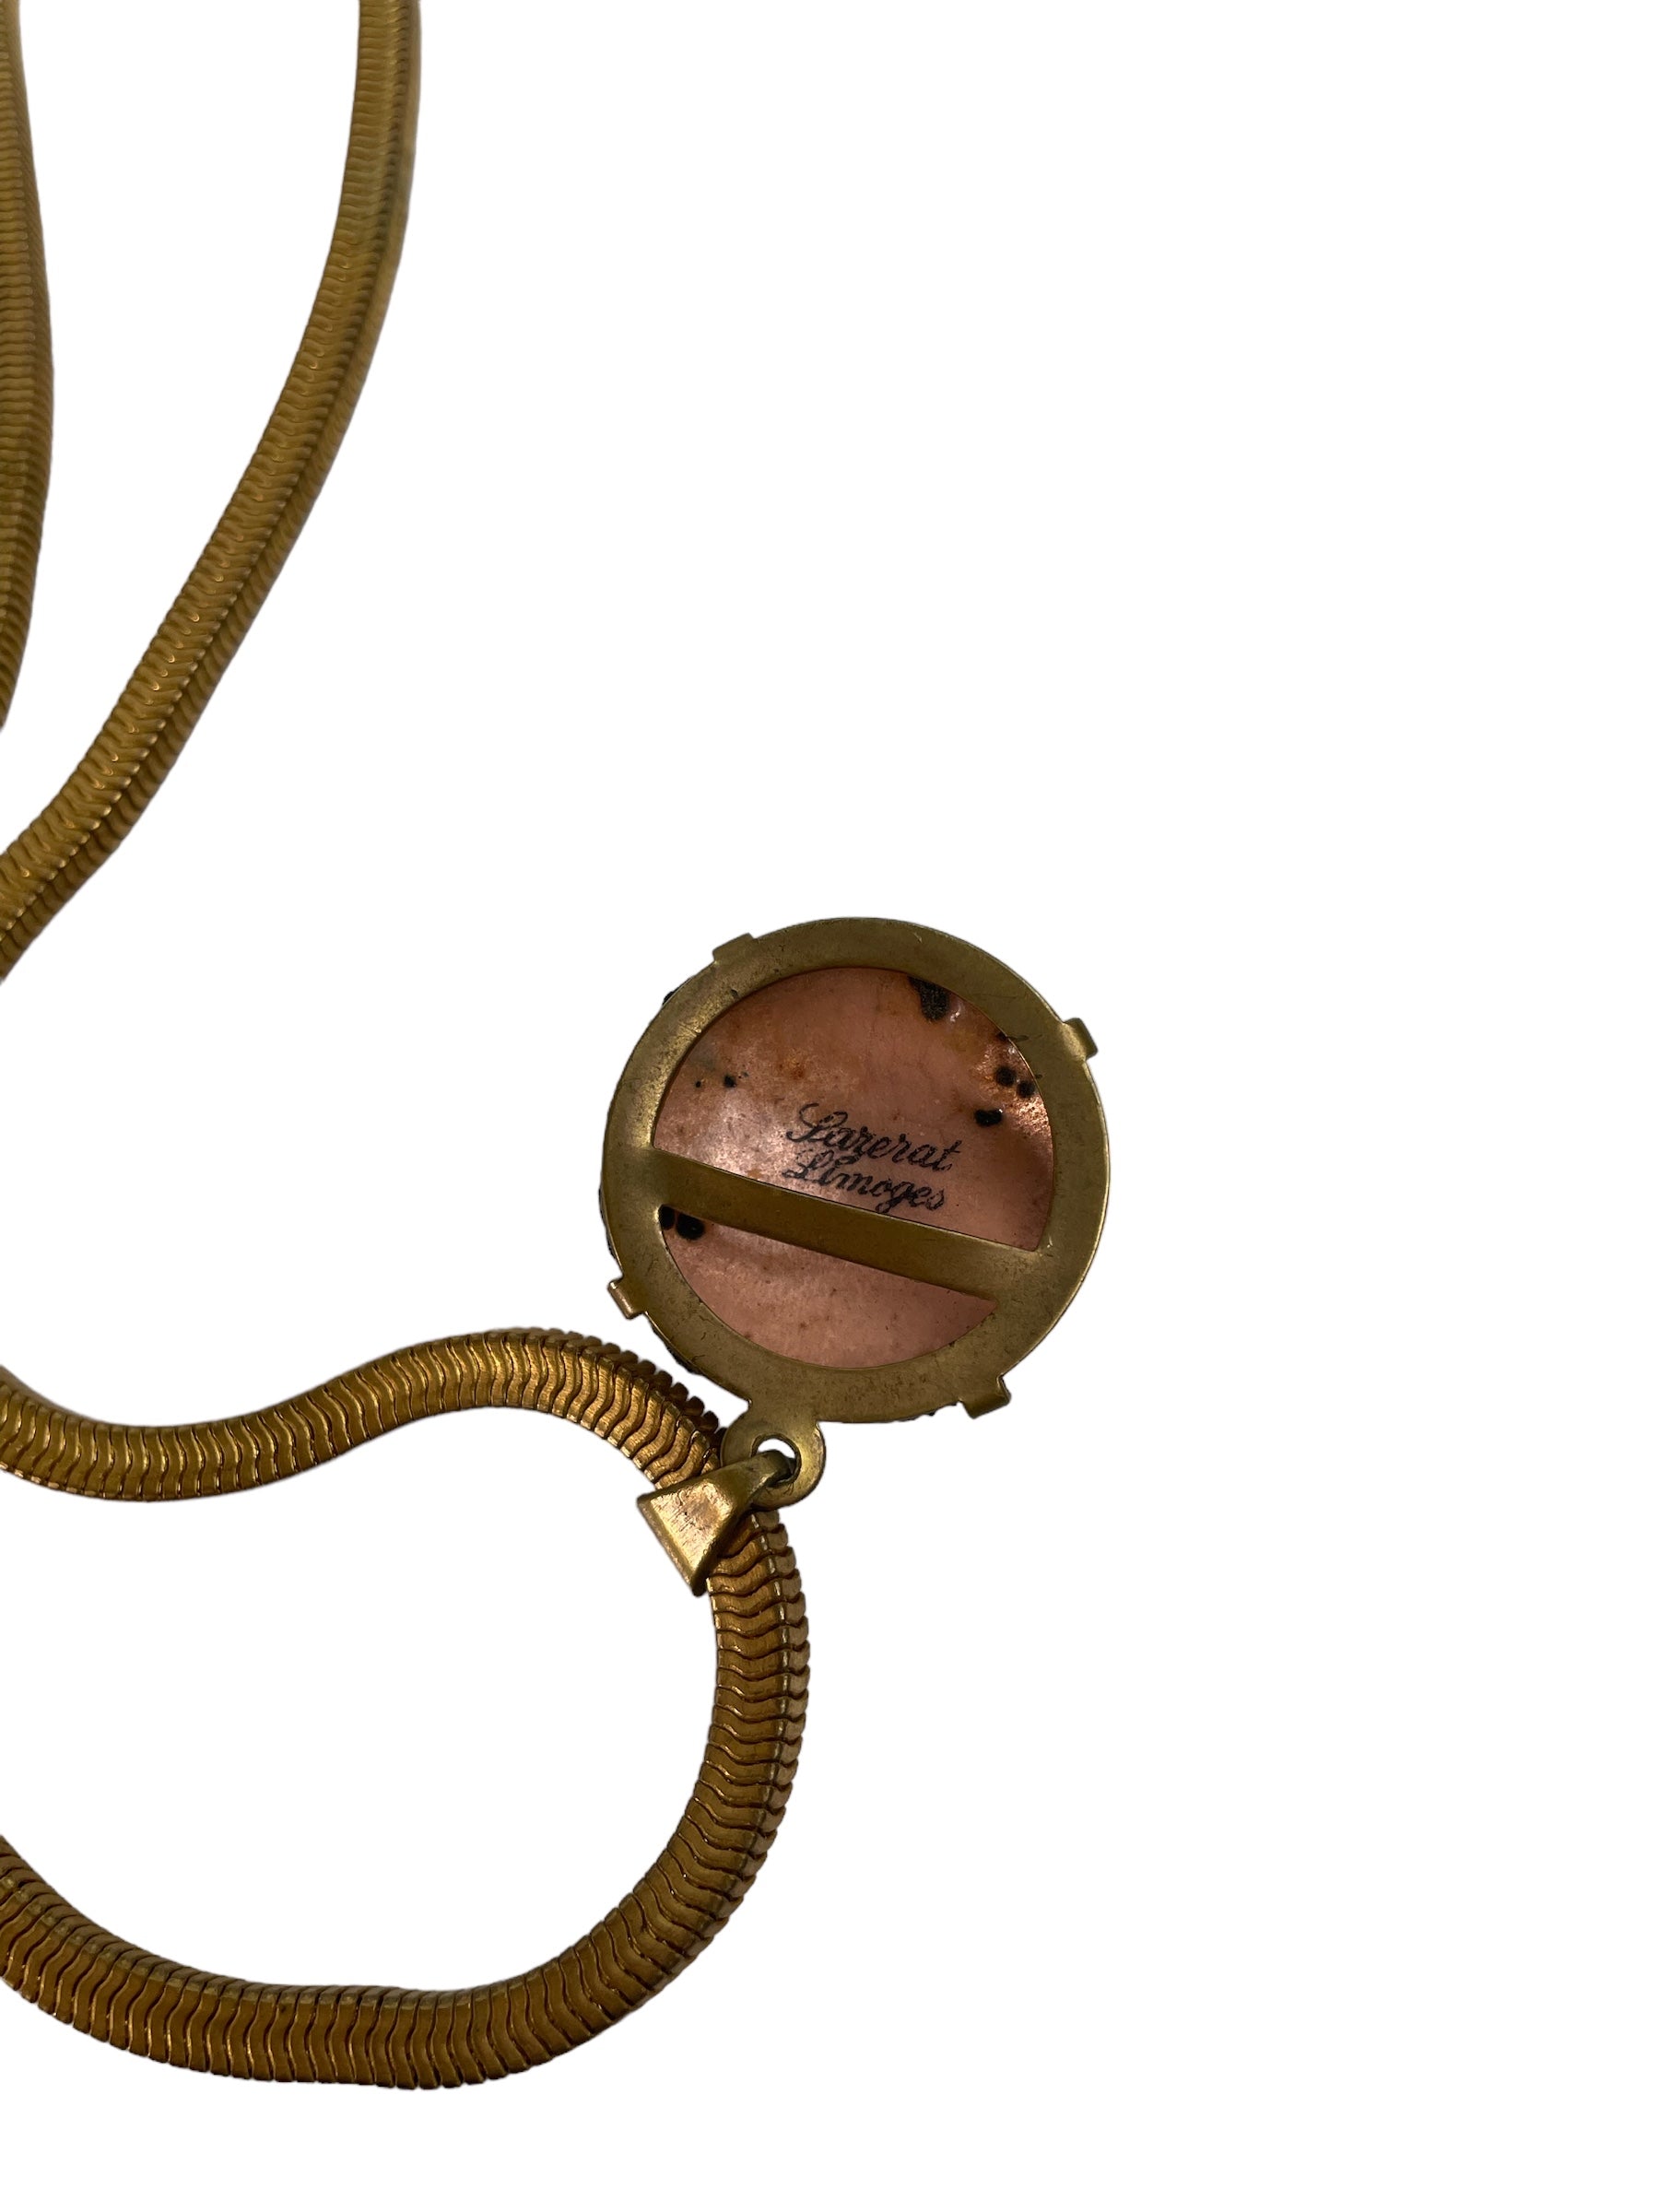 Vintage Enamel Limoges Necklace